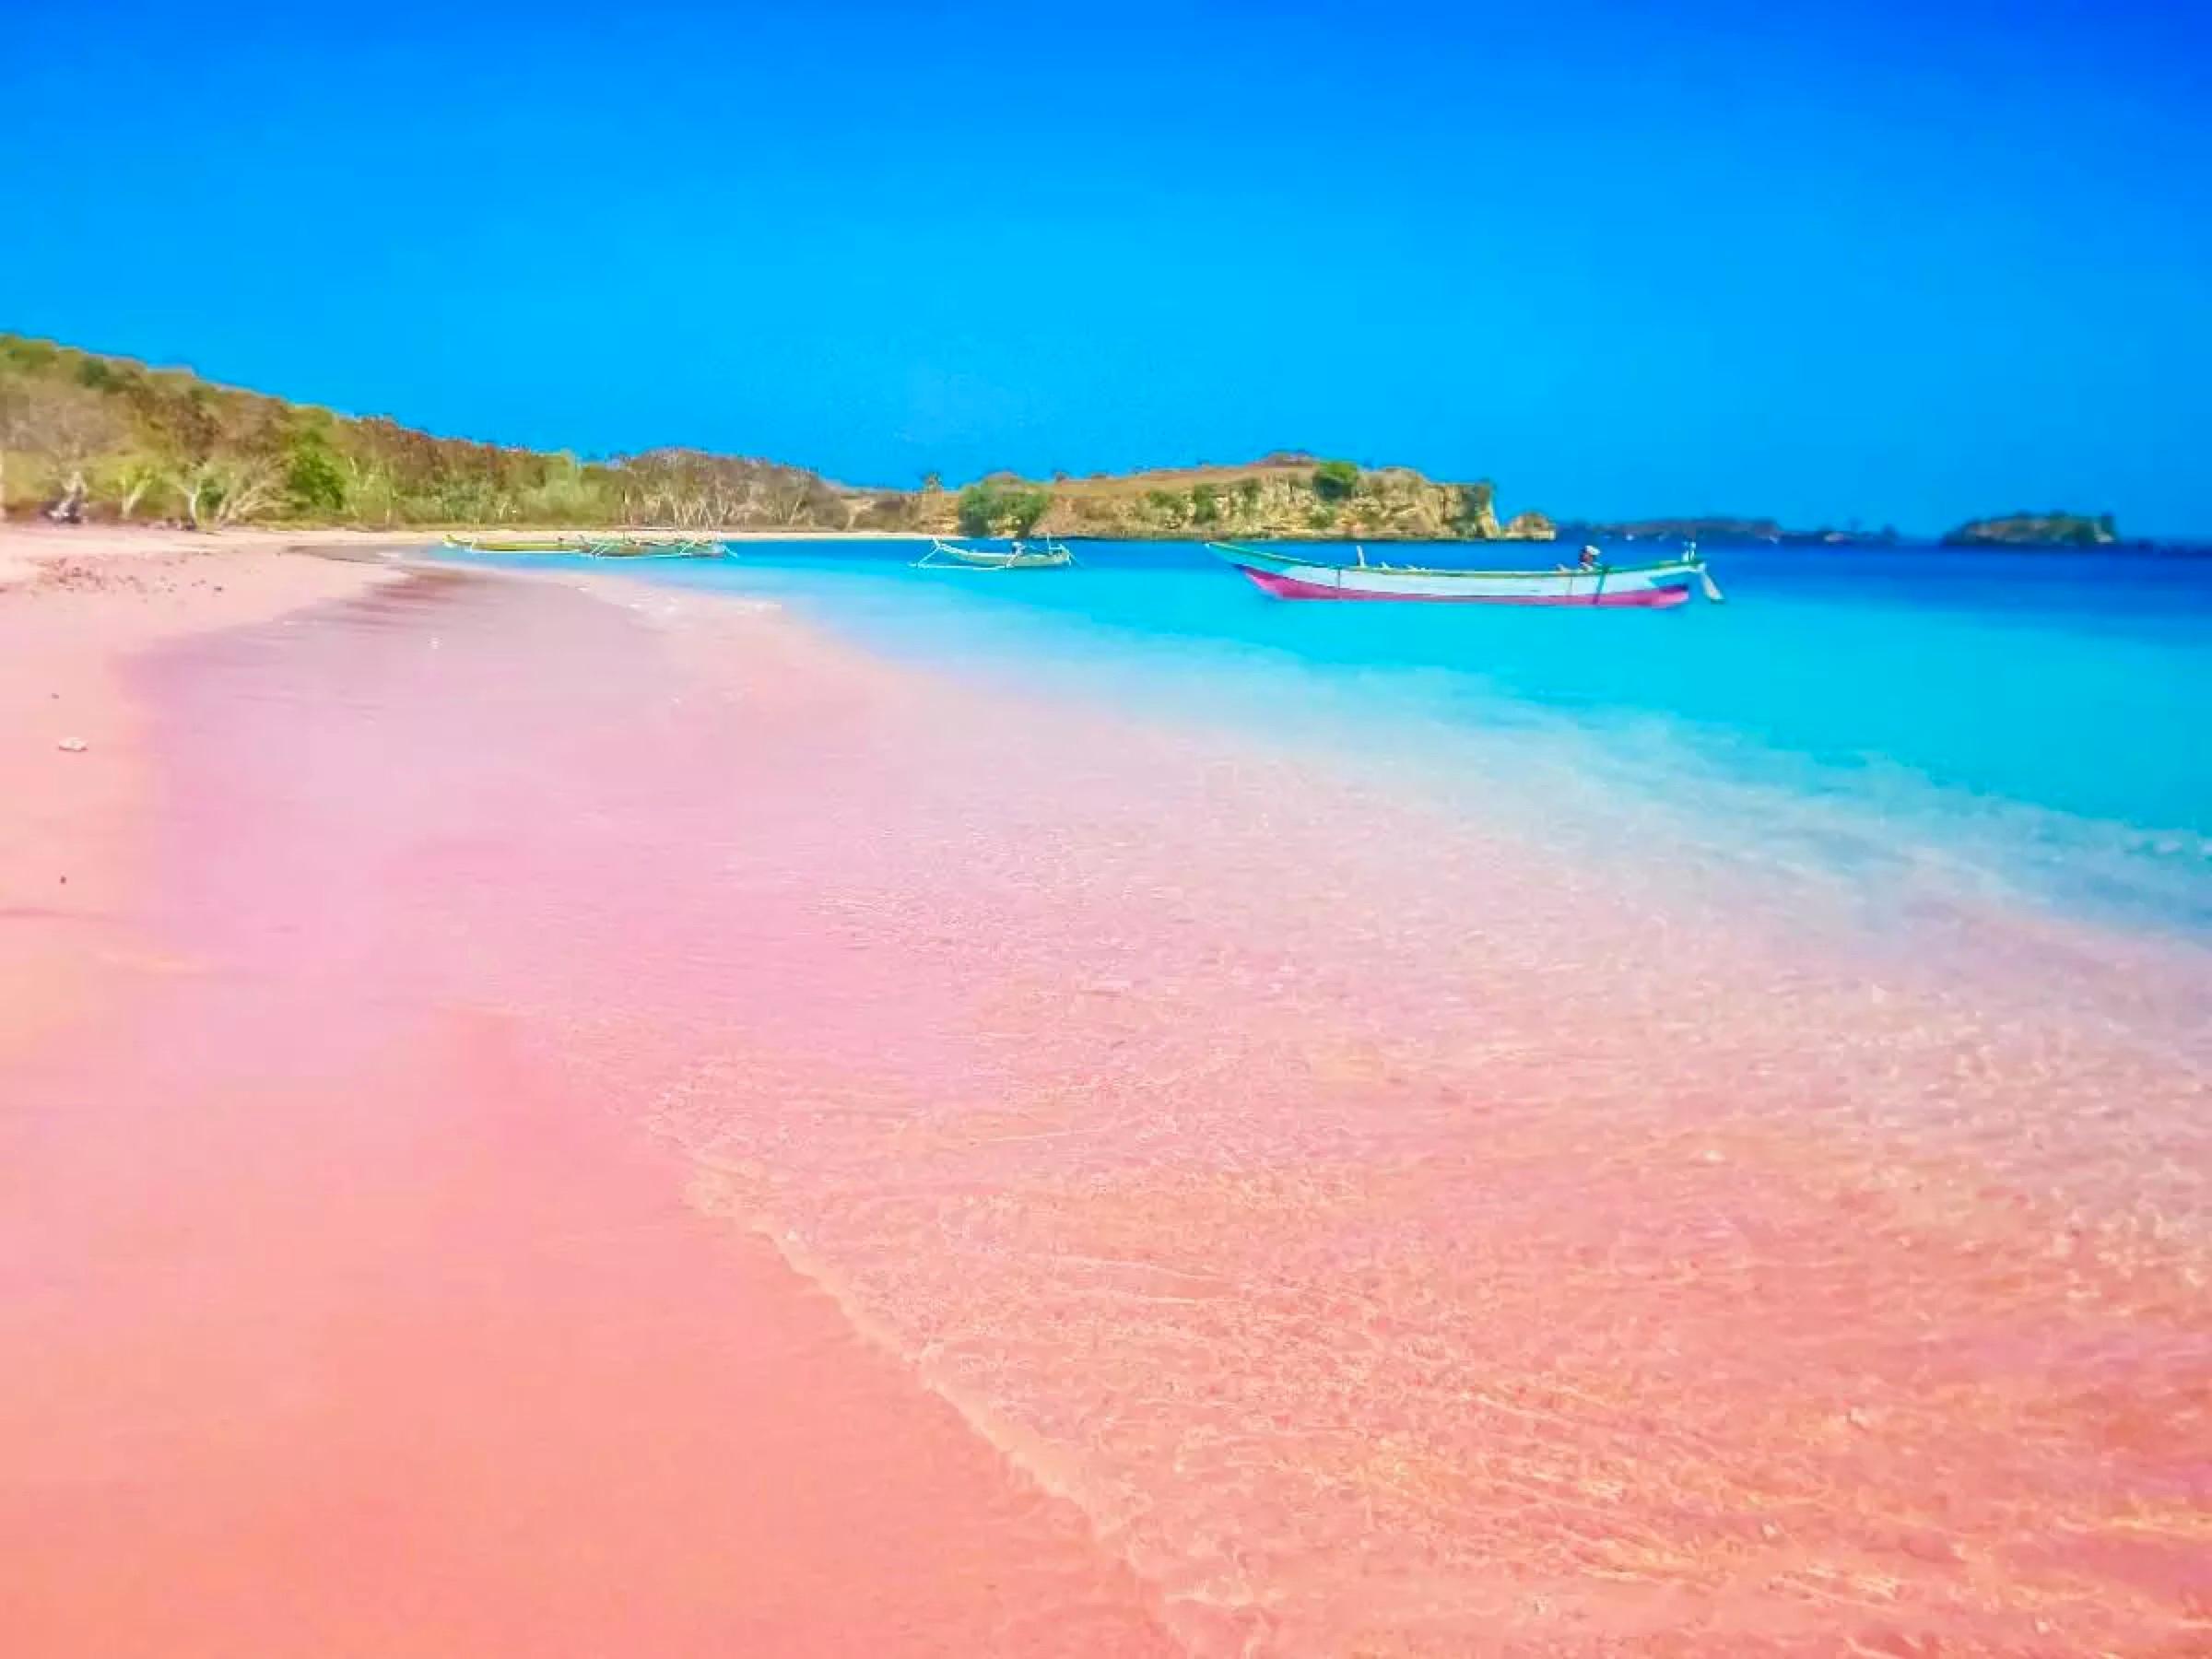 少女心炸裂,这些粉色沙滩你看过没?